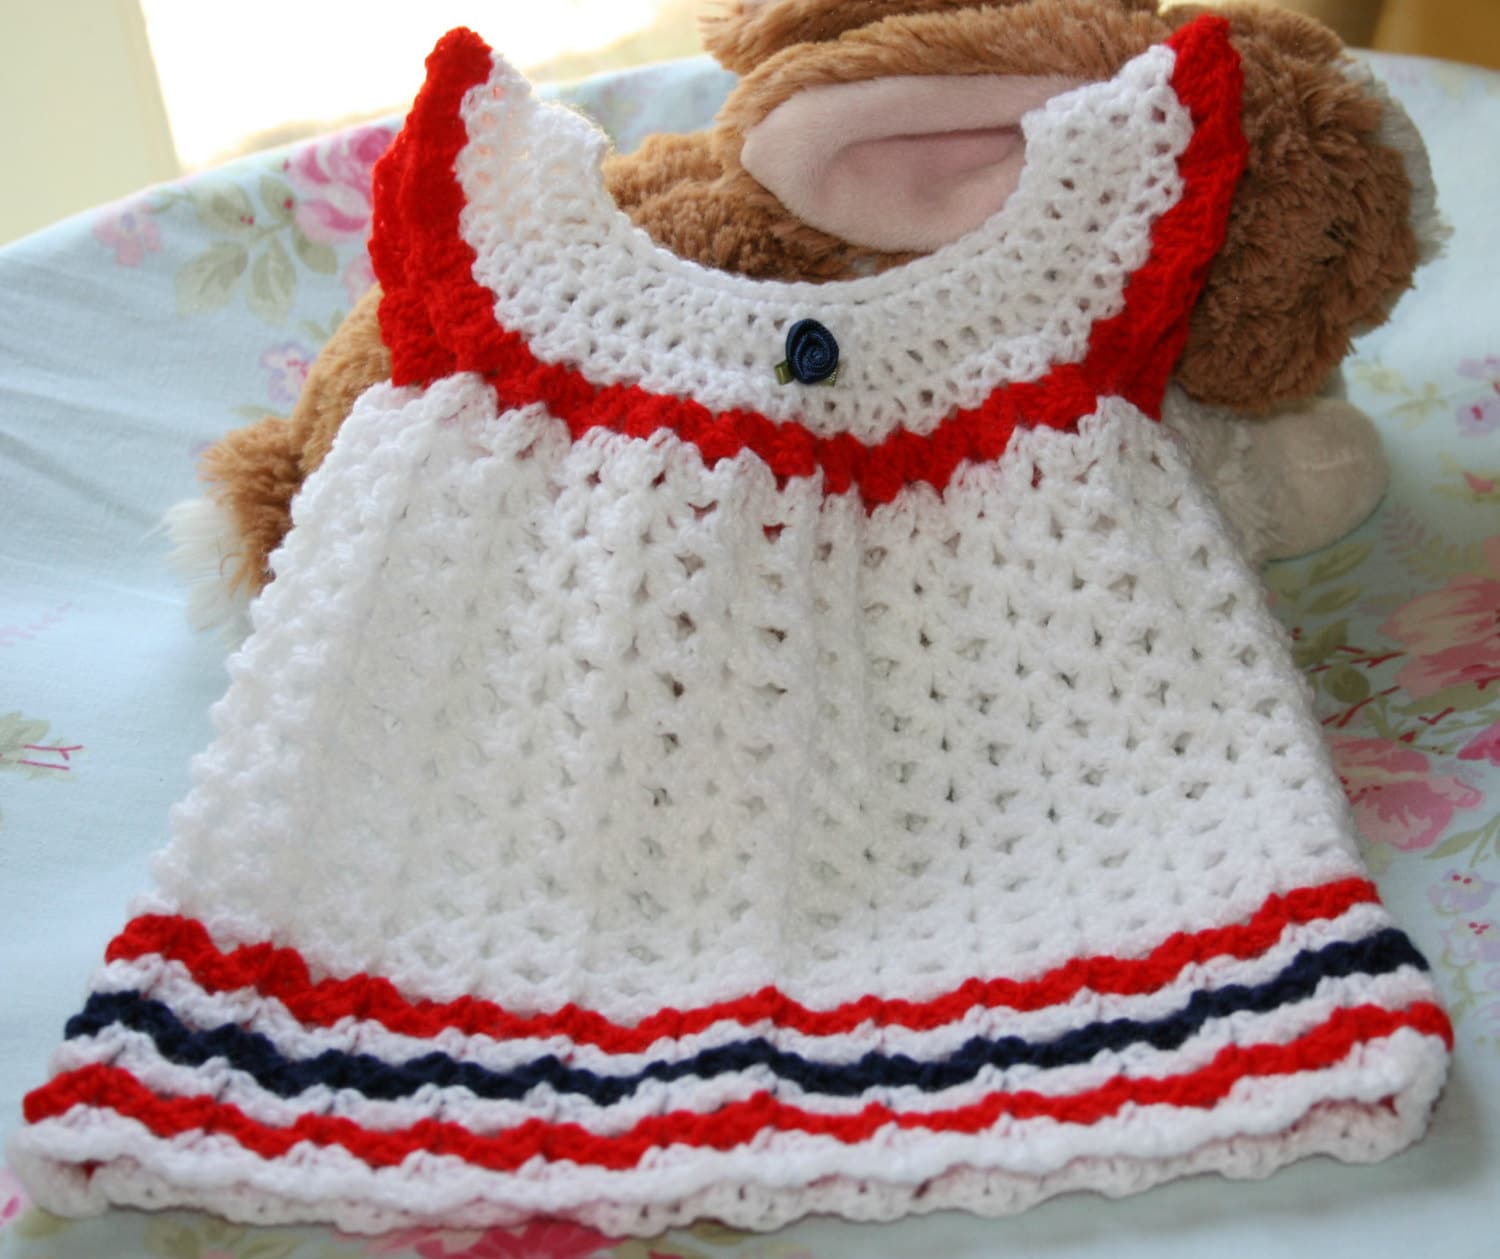 White crochet shell baby dress 0-3 month Newborn baby girl